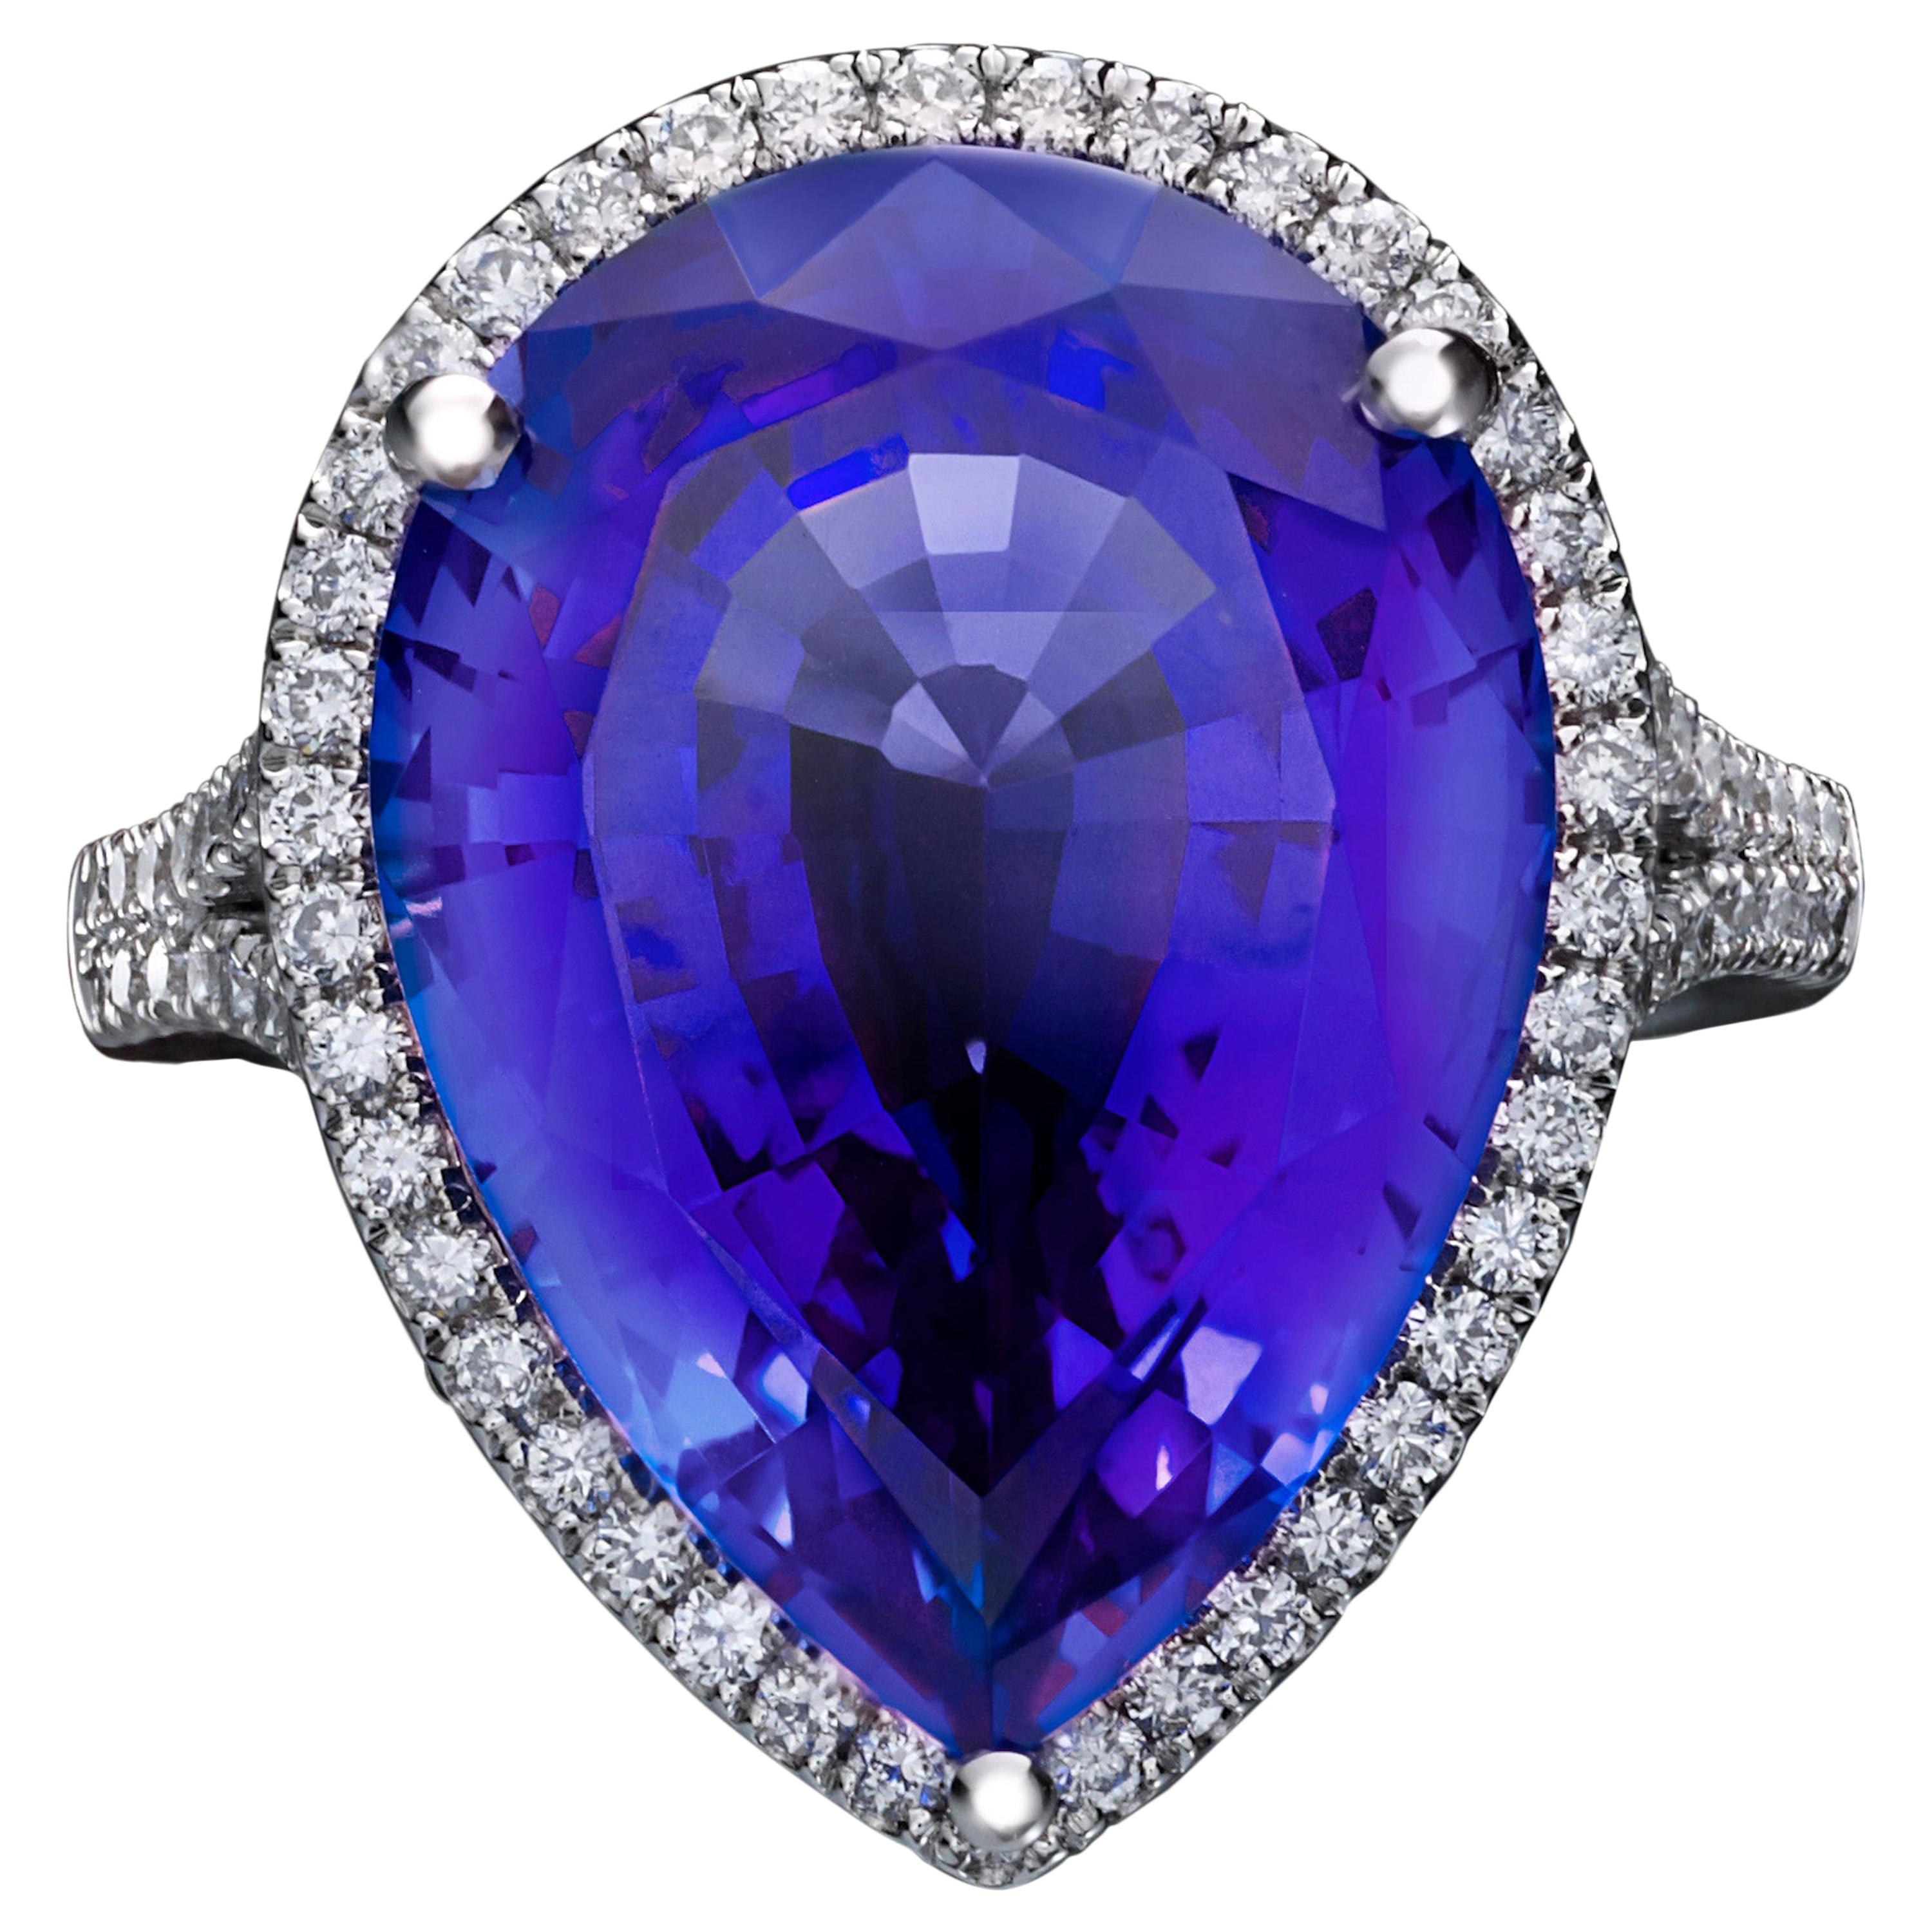 Marcel Salloum Rare Blue 10 Ct Pear Tanzanite Diamond Engagement Ring Platinum For Sale